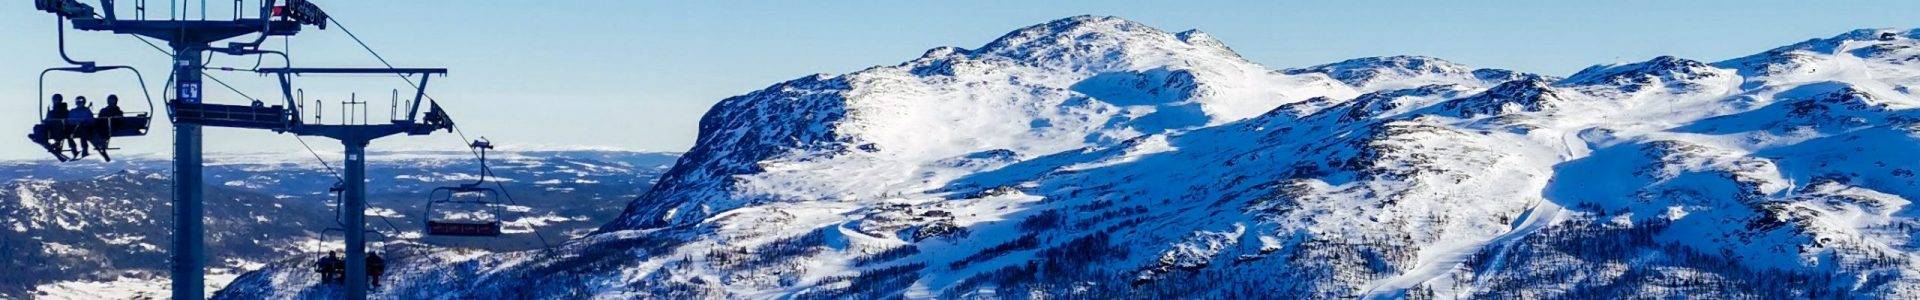 Skireise Norwegen – Impressionen